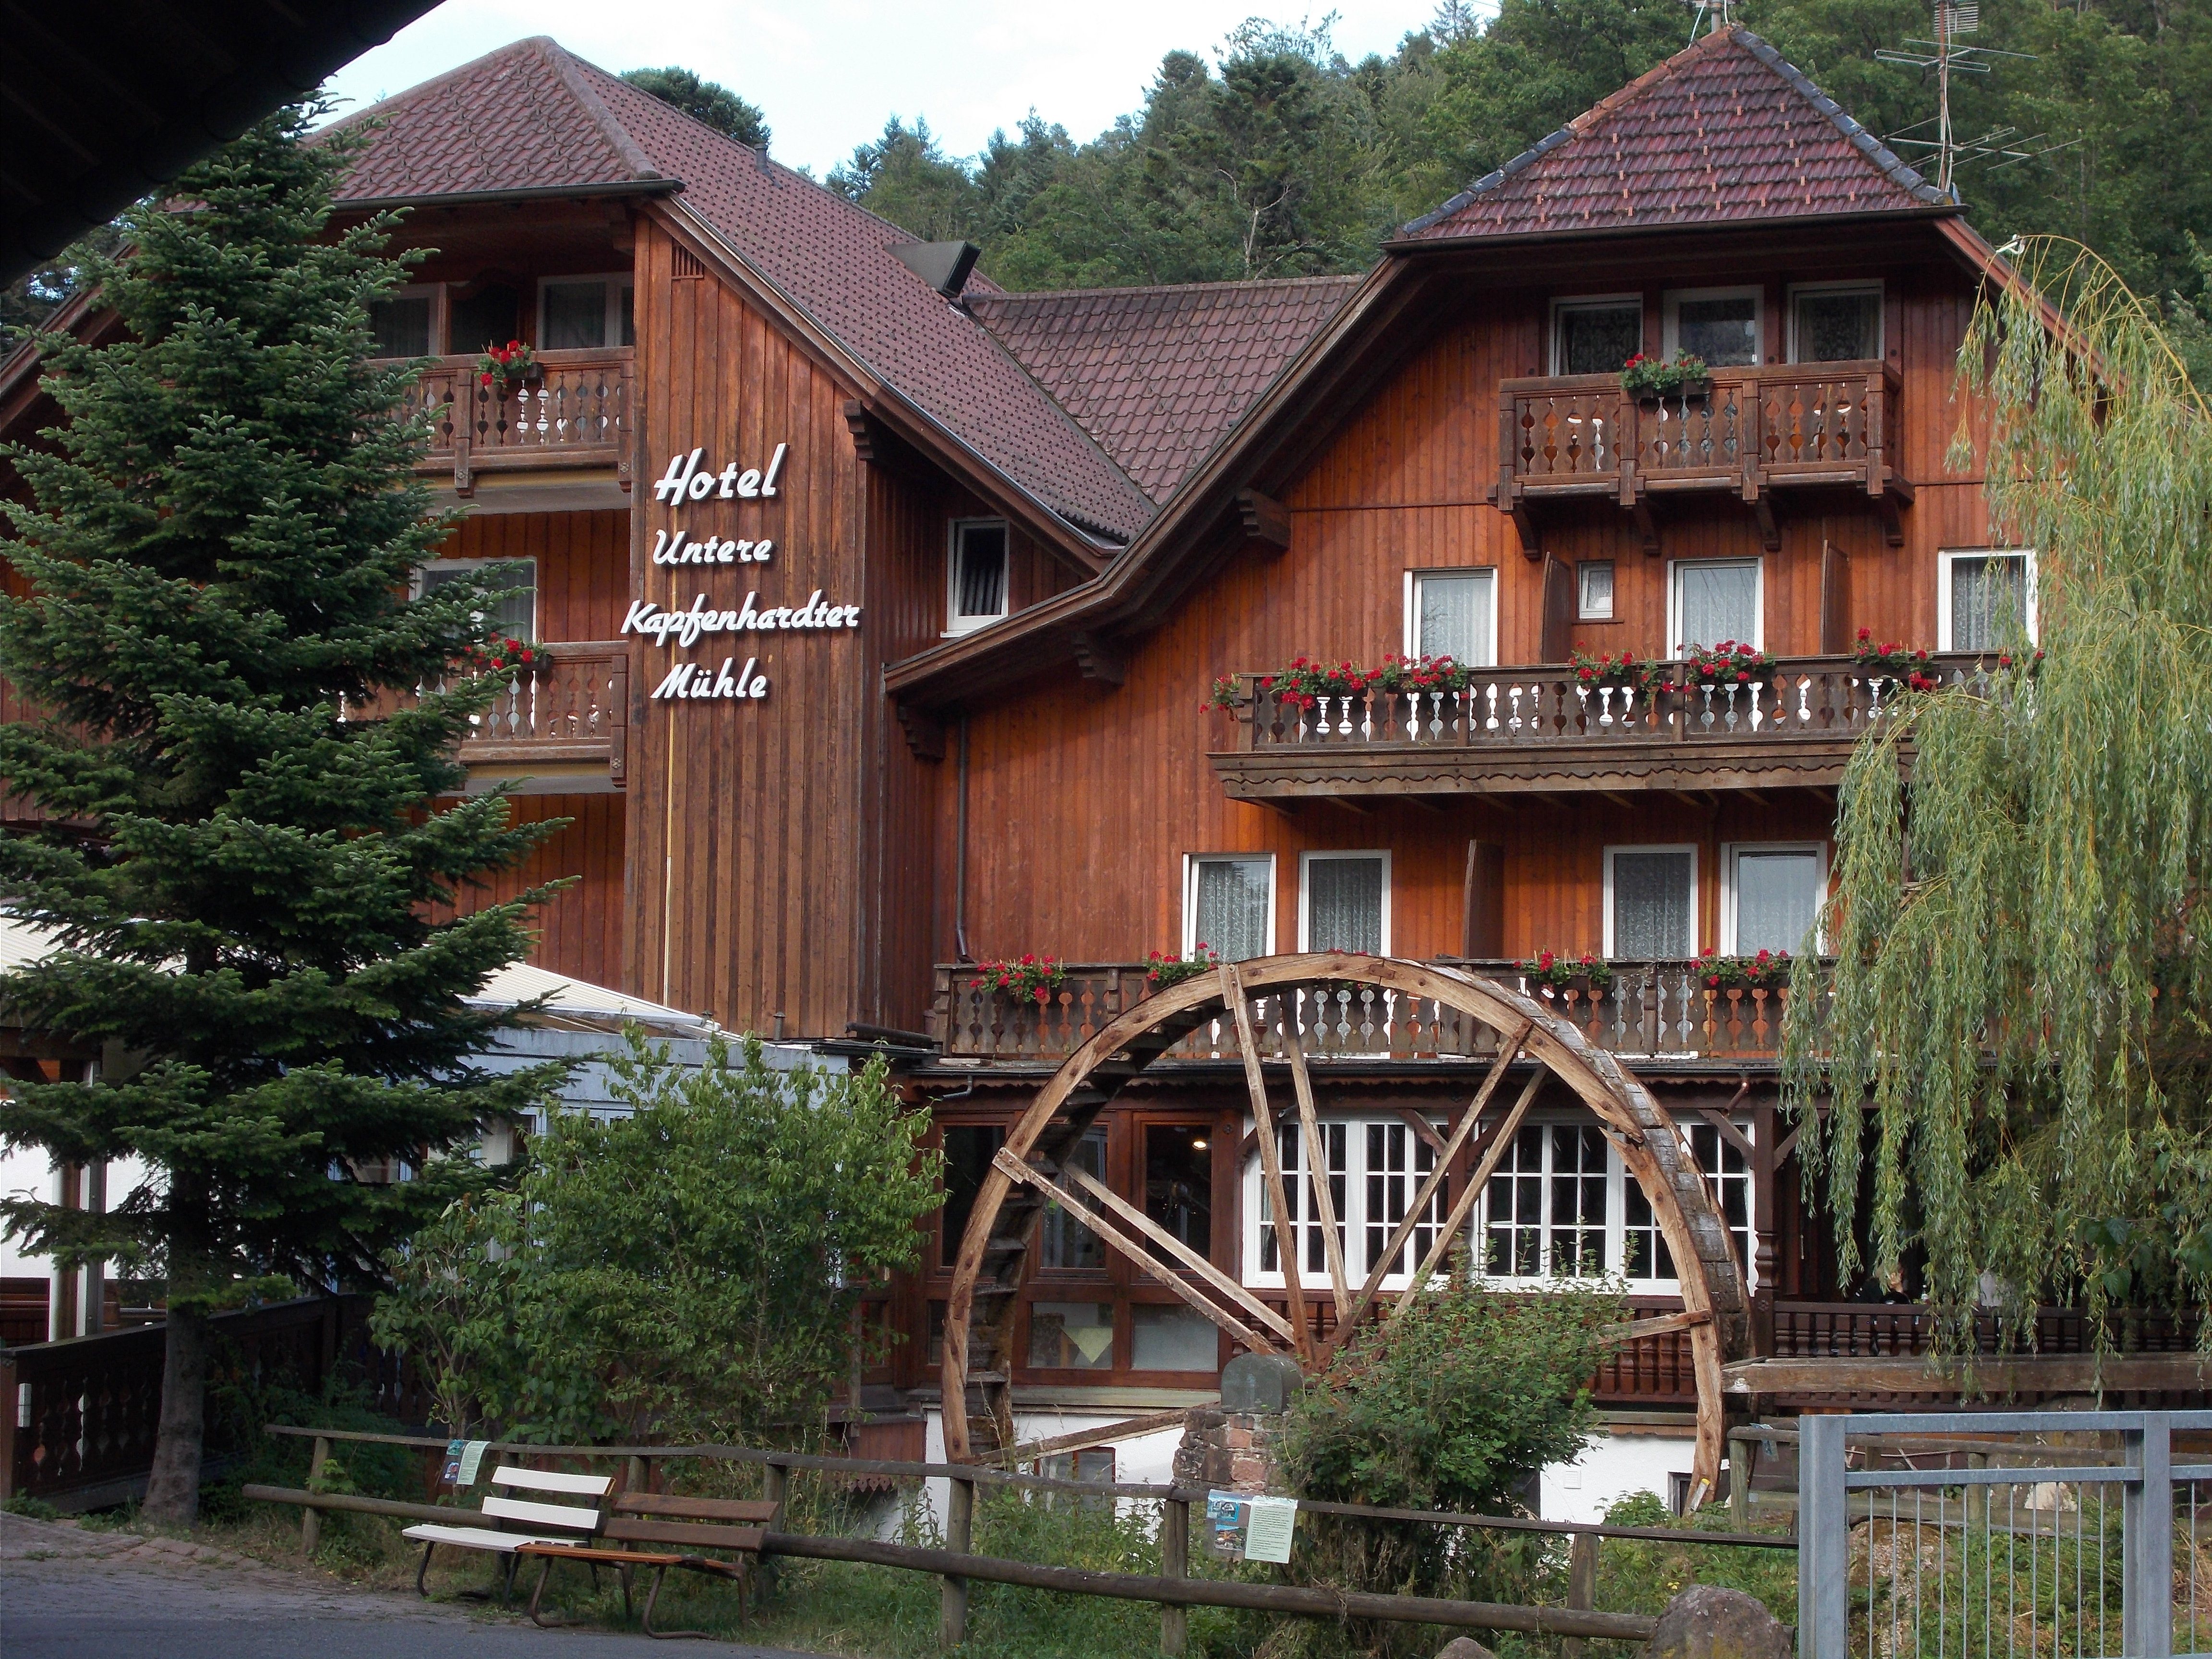 Bild 10 Landhotel Untere Kapfenhardter Mühle in Unterreichenbach